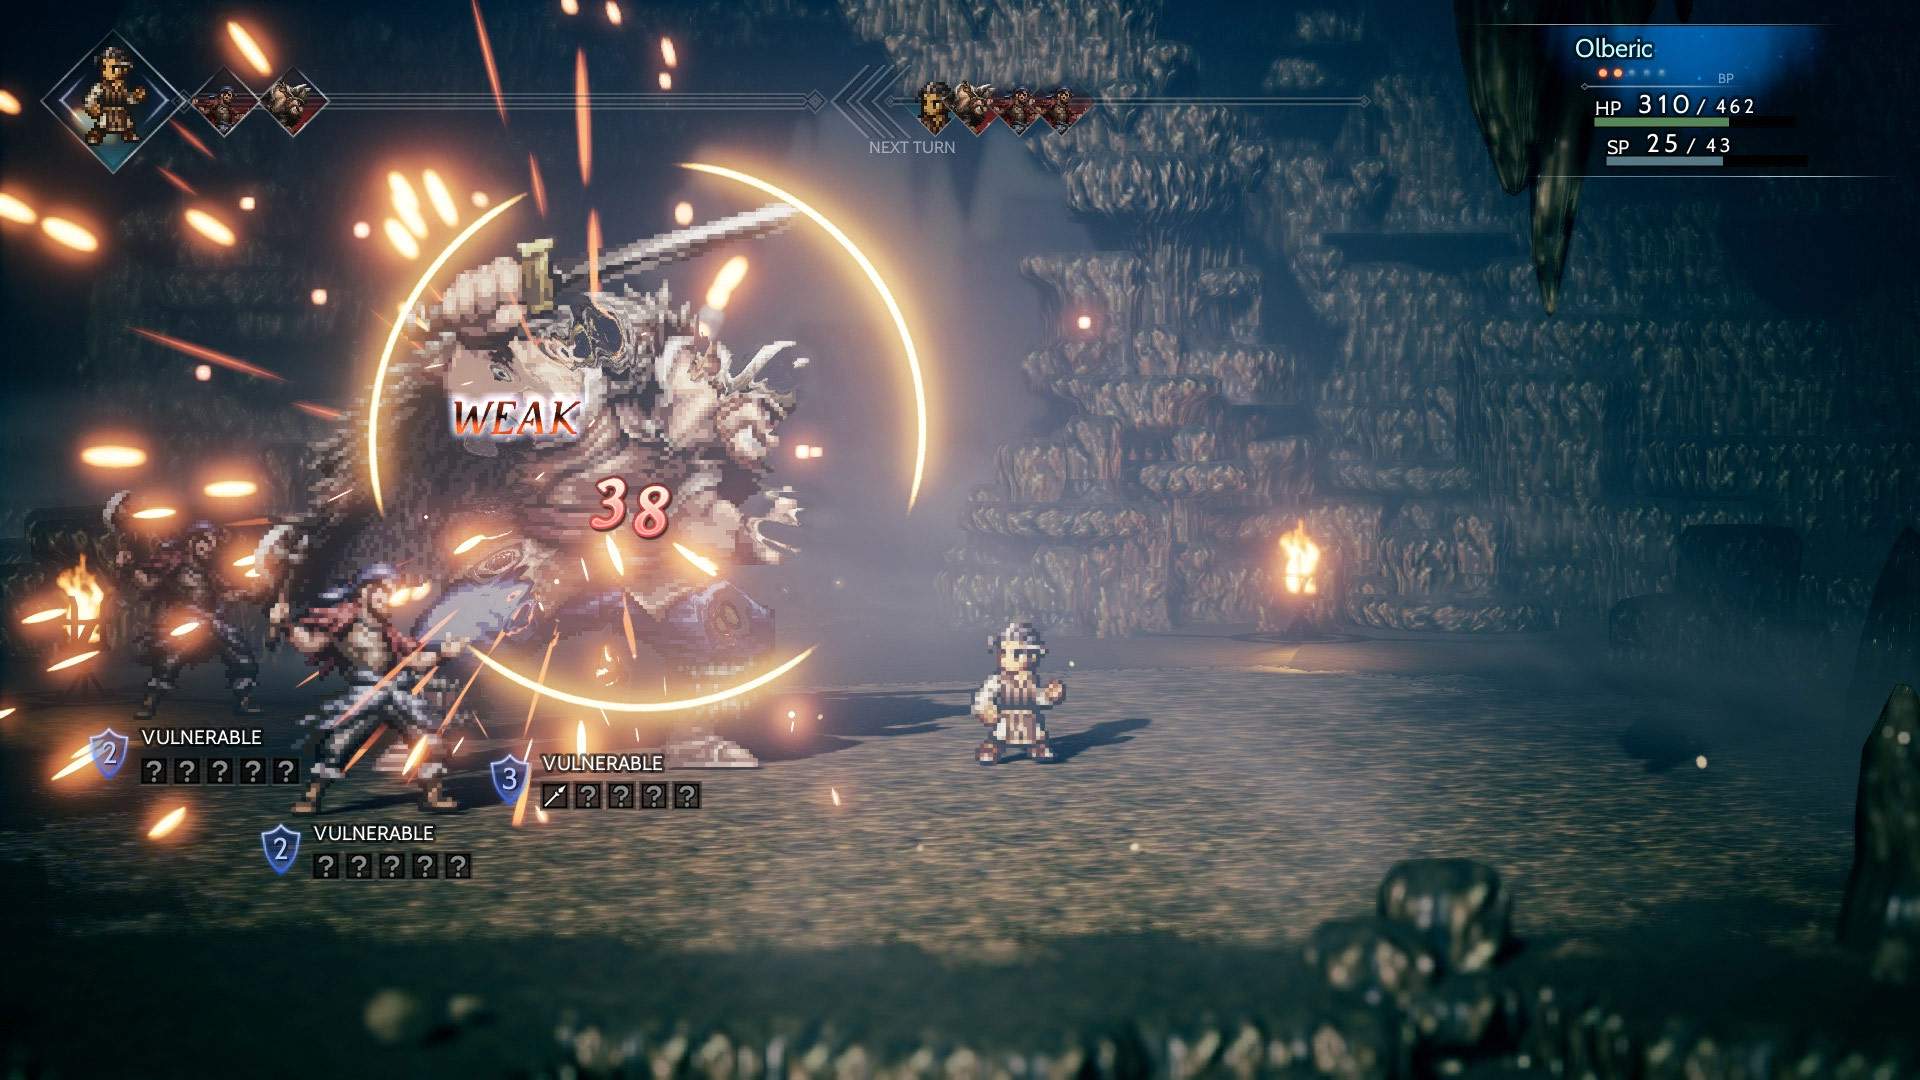 Captura de tela do combate: Olberic atacando três inimigos em uma masmorra sinistra.